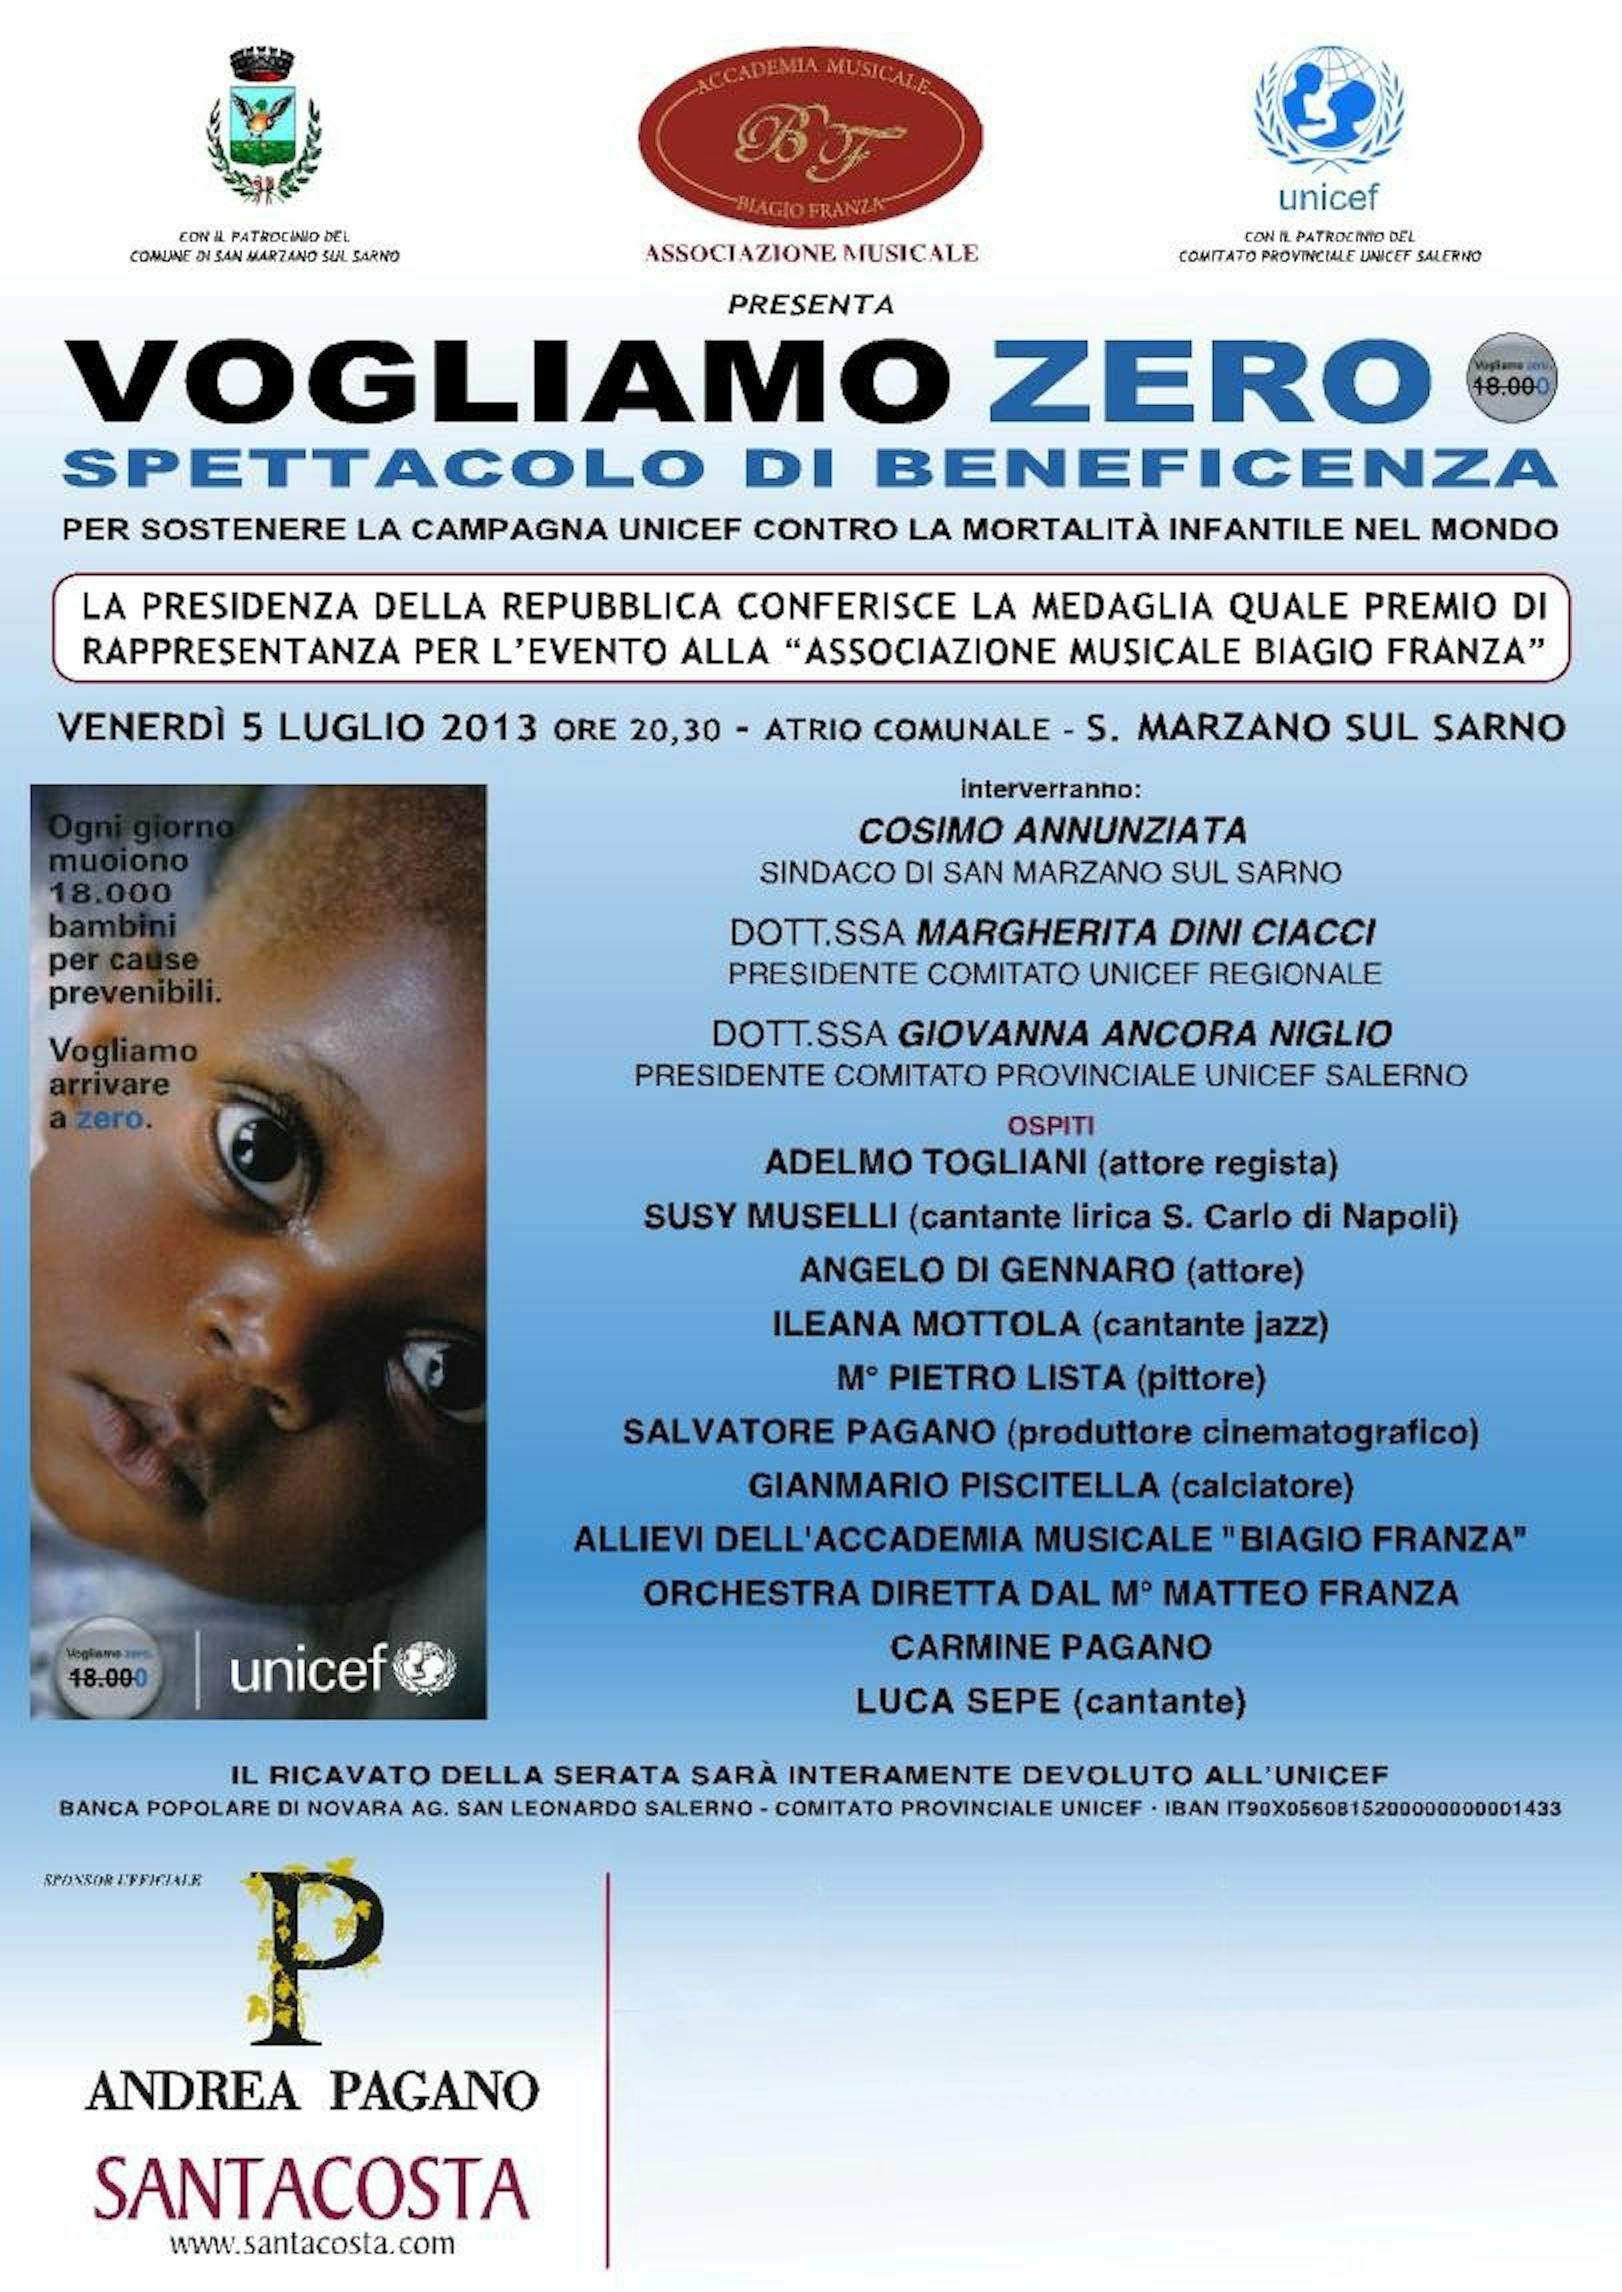 S. Marzano sul Sarno, serata di artisti per arrivare a Zero